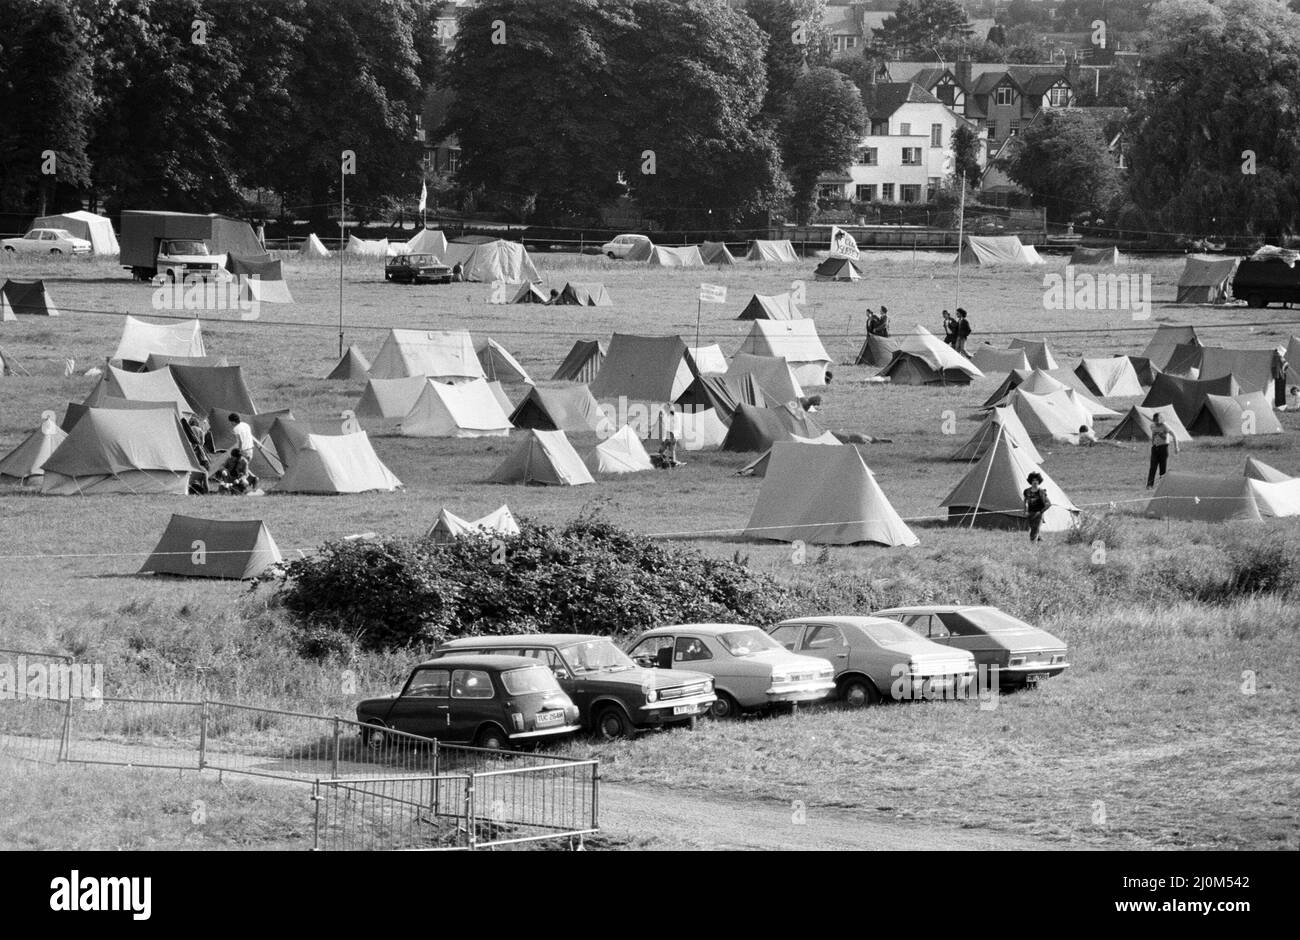 Le camping grandit à mesure que les festivaliers commencent à arriver pour le festival national du rock de 20th, qui a lieu du 22nd au 24th août, à Richfield Avenue, Reading, août 1980. Banque D'Images